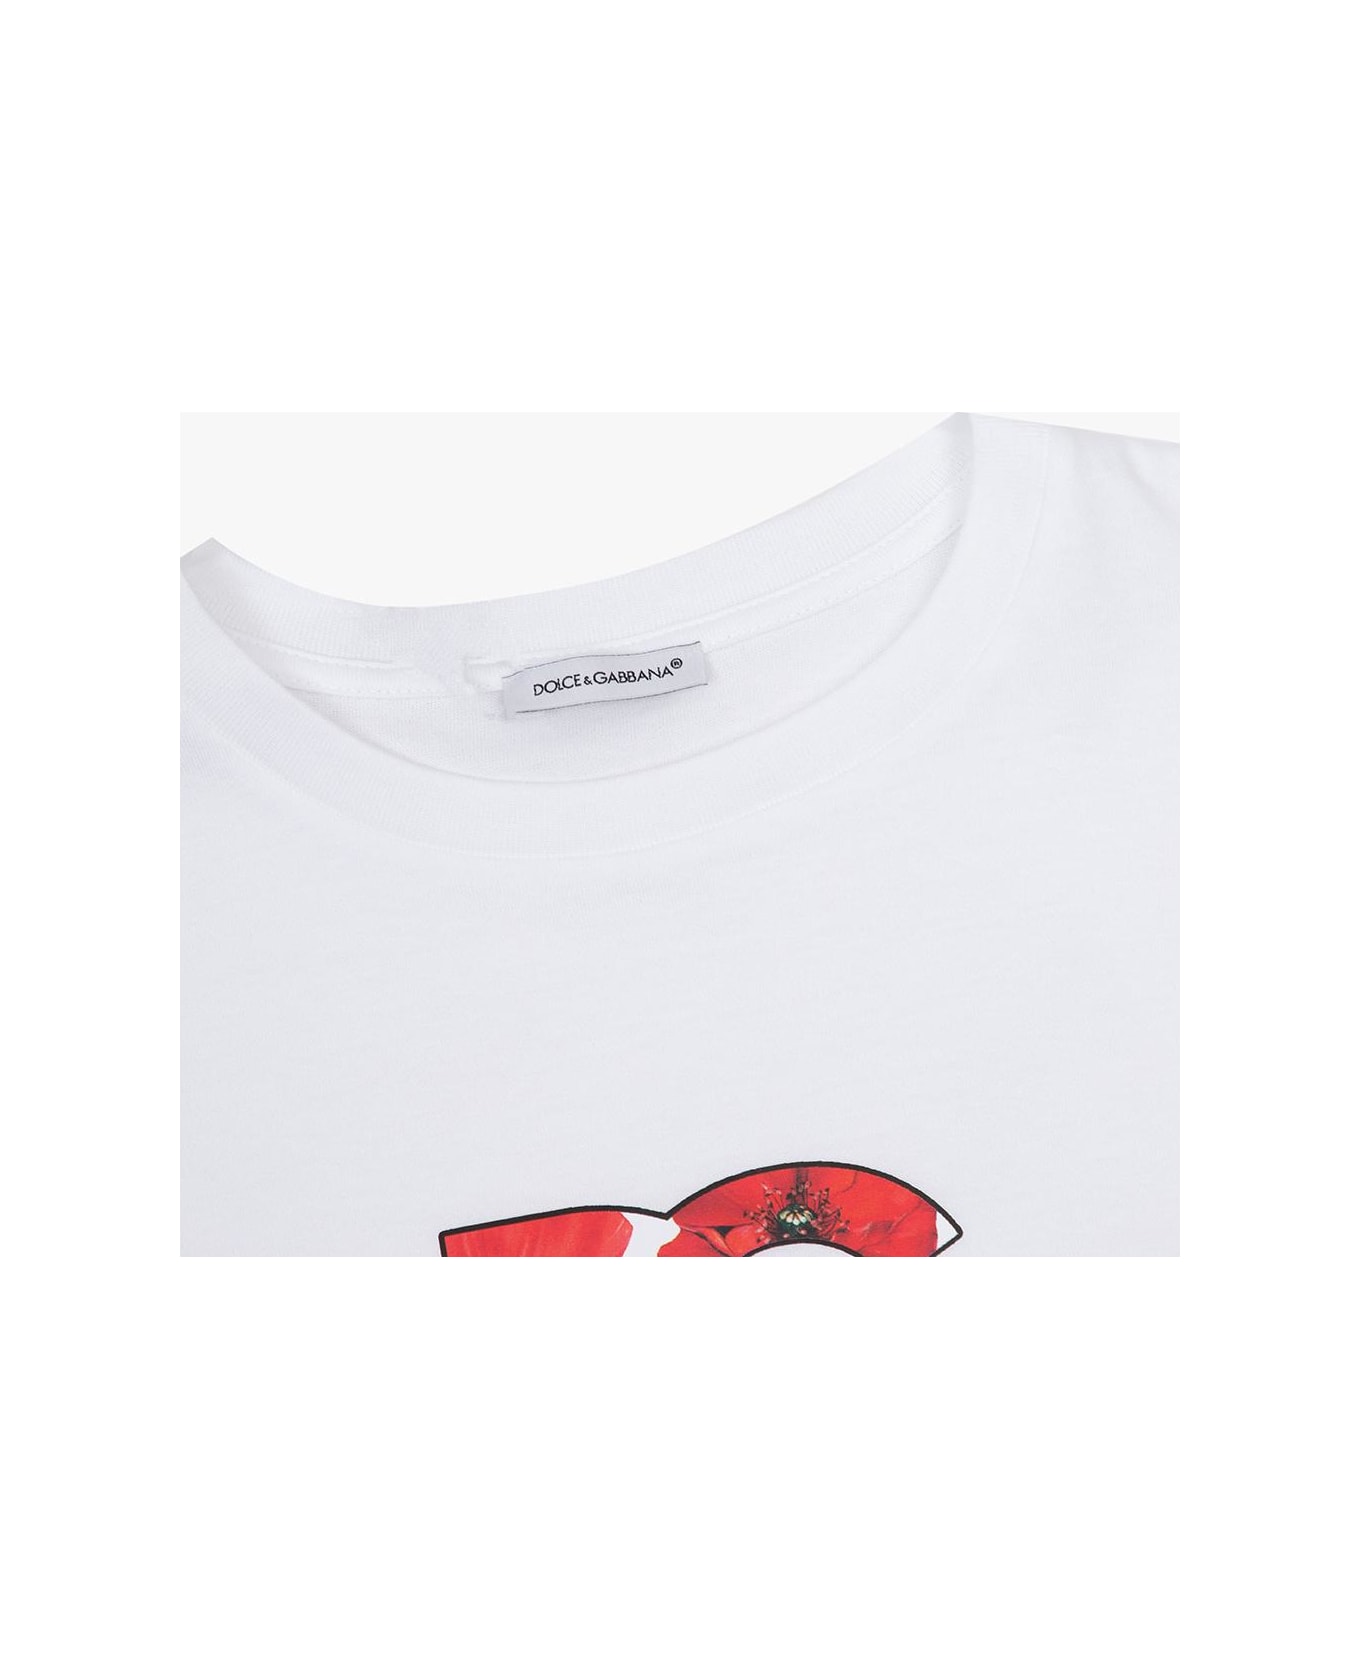 Dolce & Gabbana Kids T-shirt With Logo - WHITE